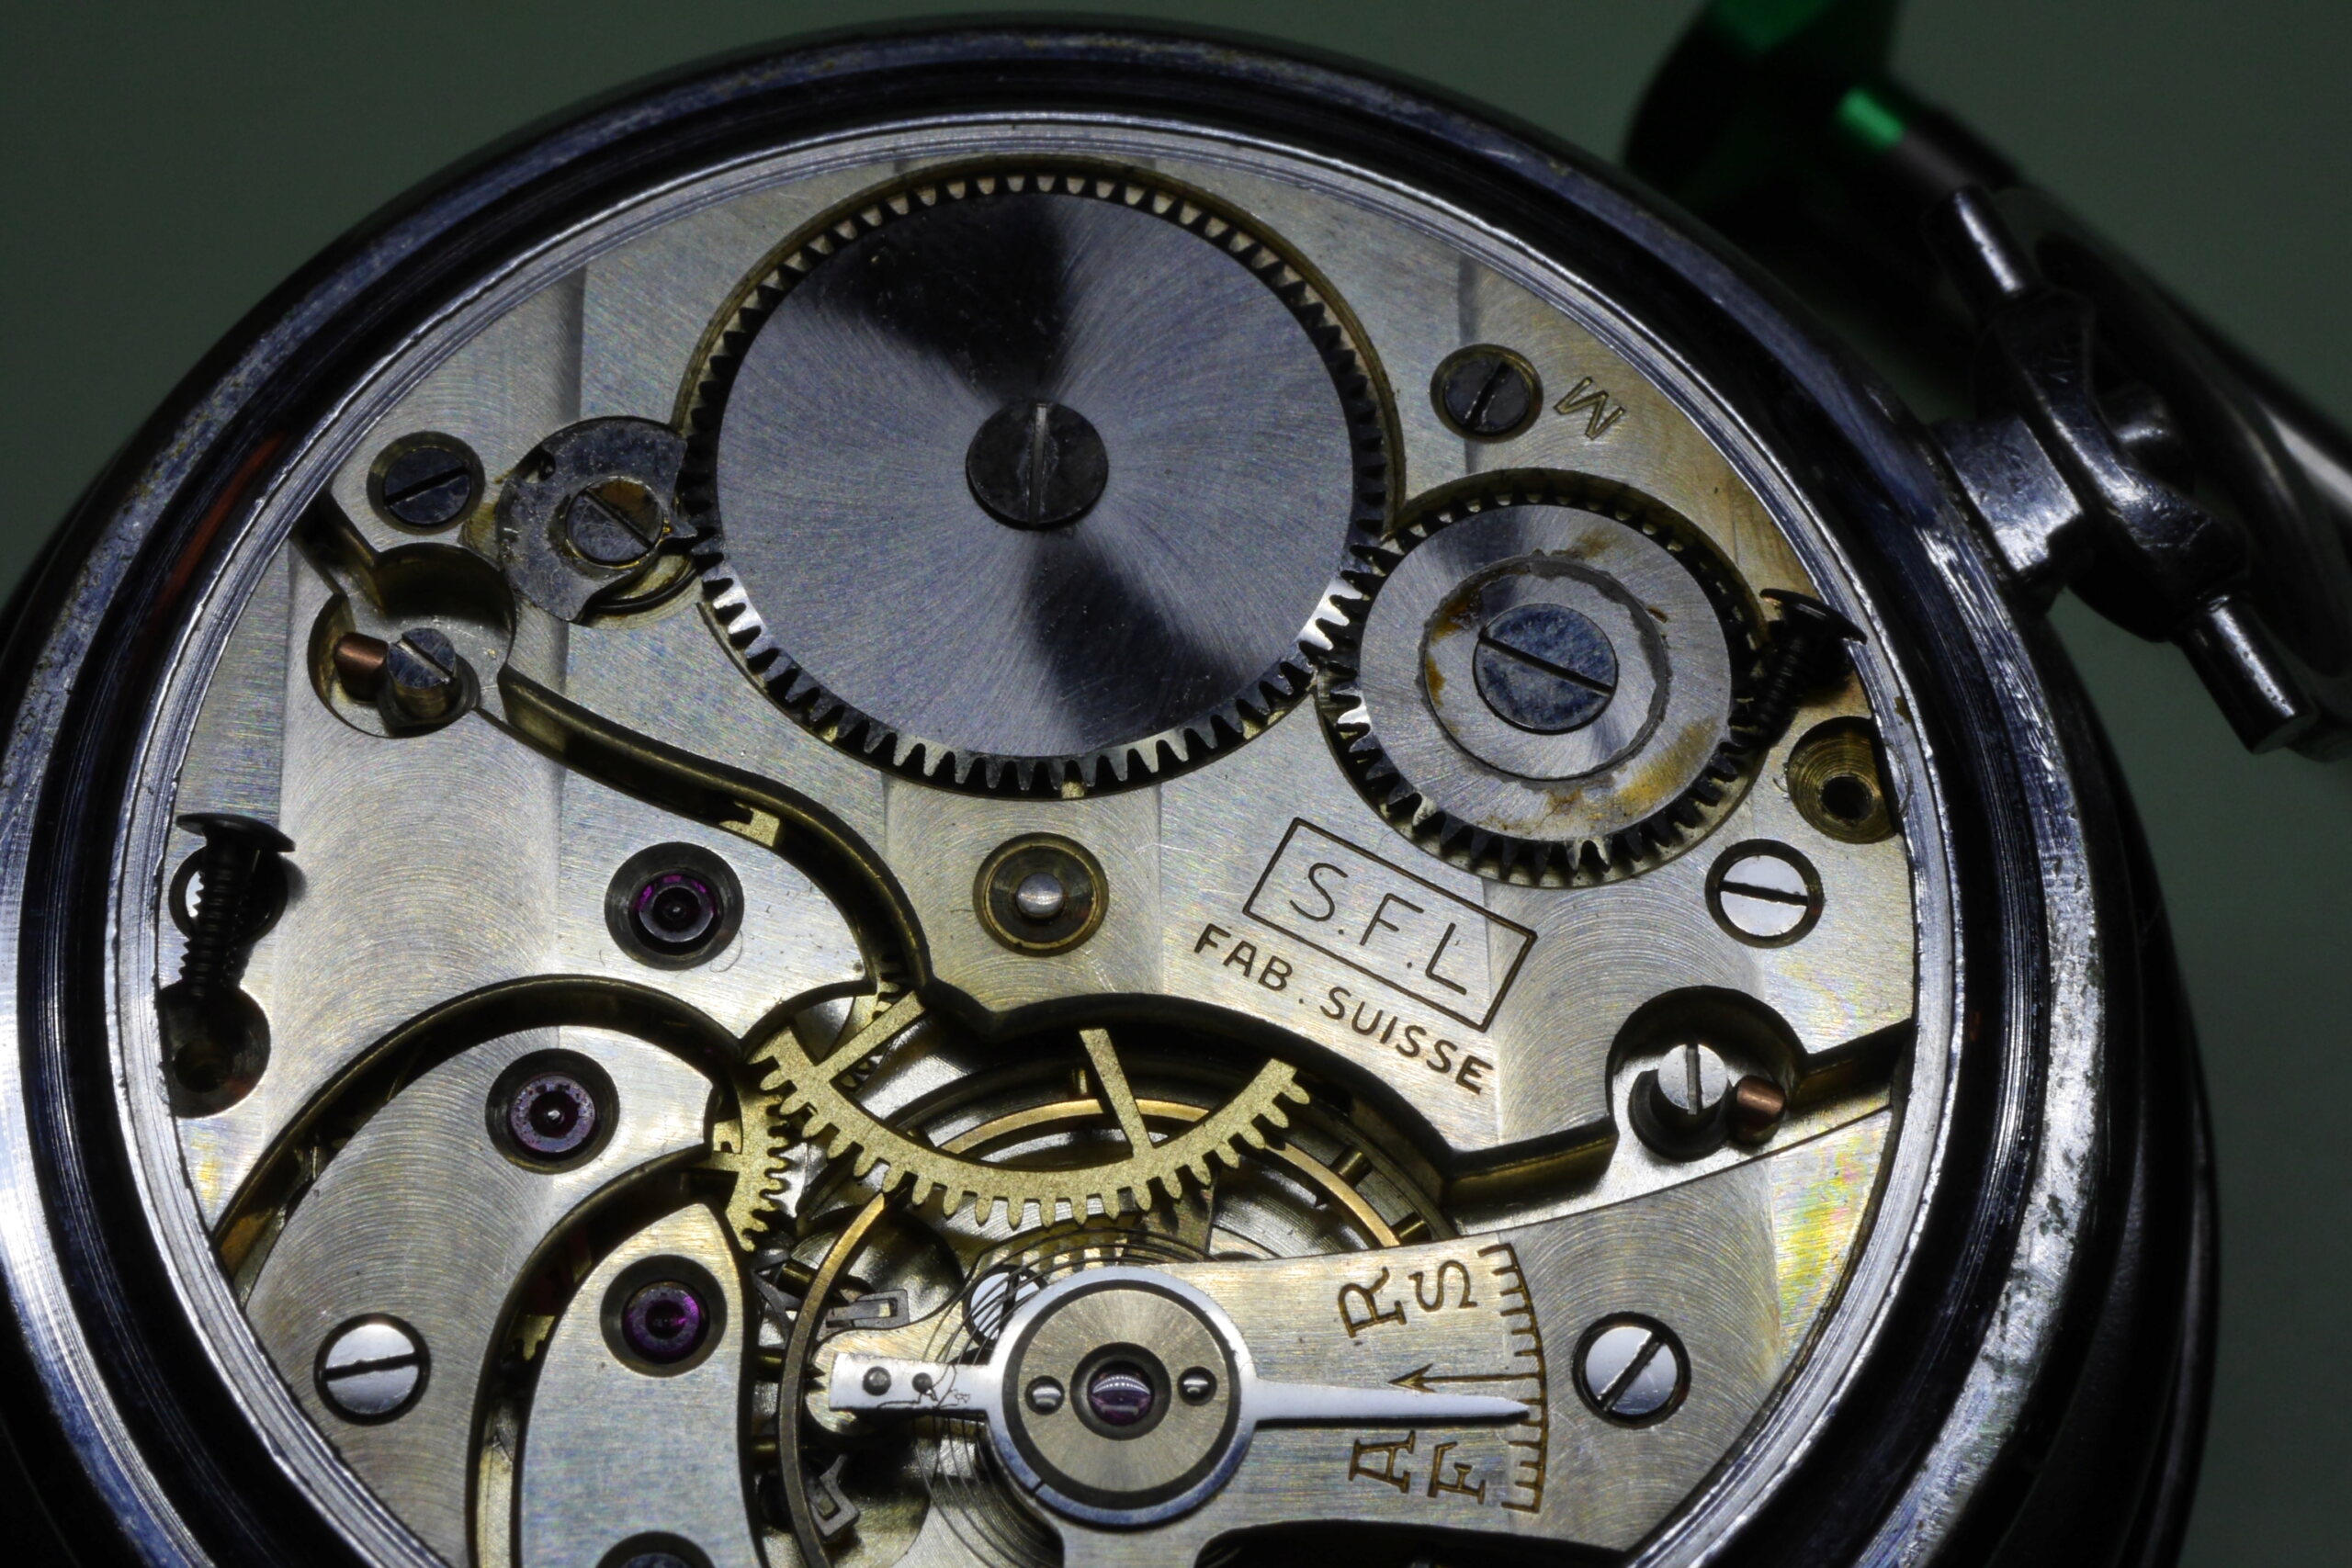 longines - Réparation et entretien d'une montre de poche S.F.L (société française longines) 2010